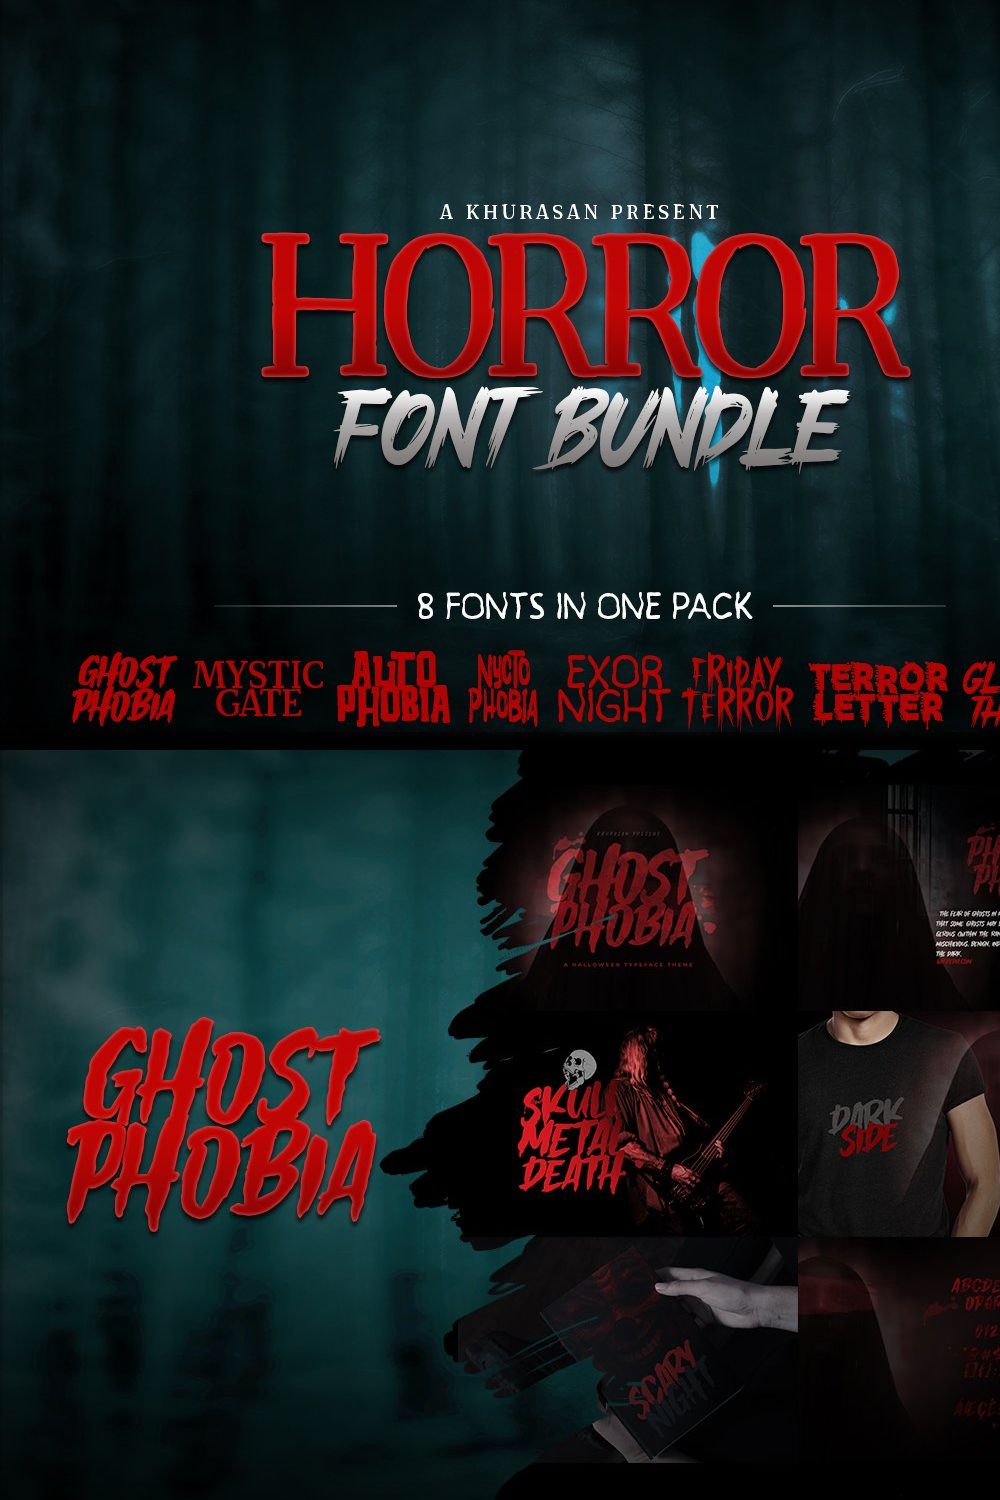 Horror Font Bundle pinterest preview image.